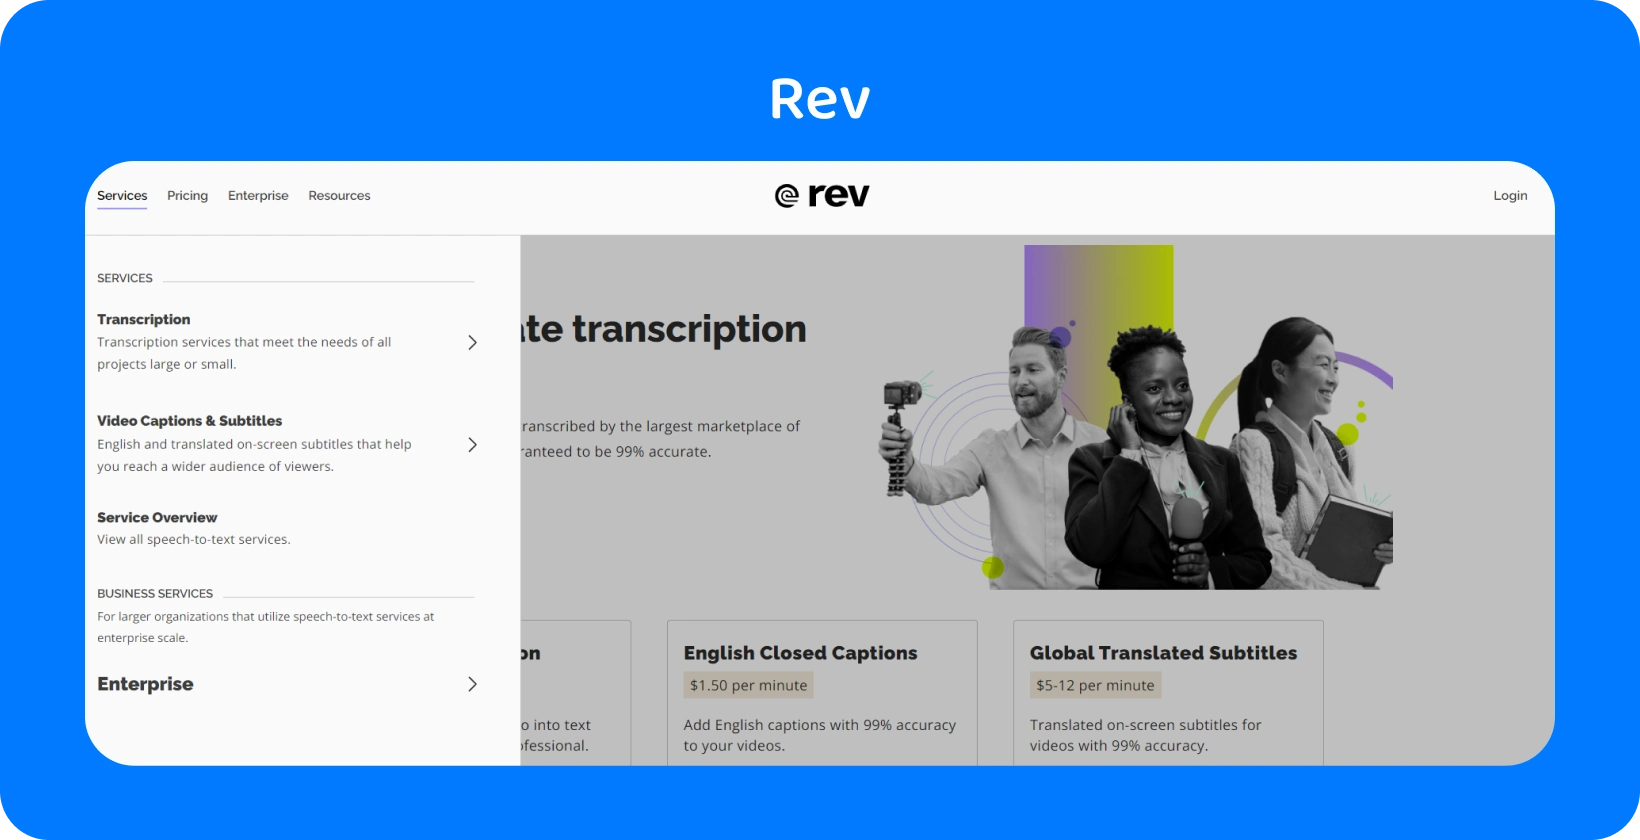 Домашня сторінка Rev демонструє послуги транскрипції для швидкого та точного перетворення аудіо в текст для професіоналів.